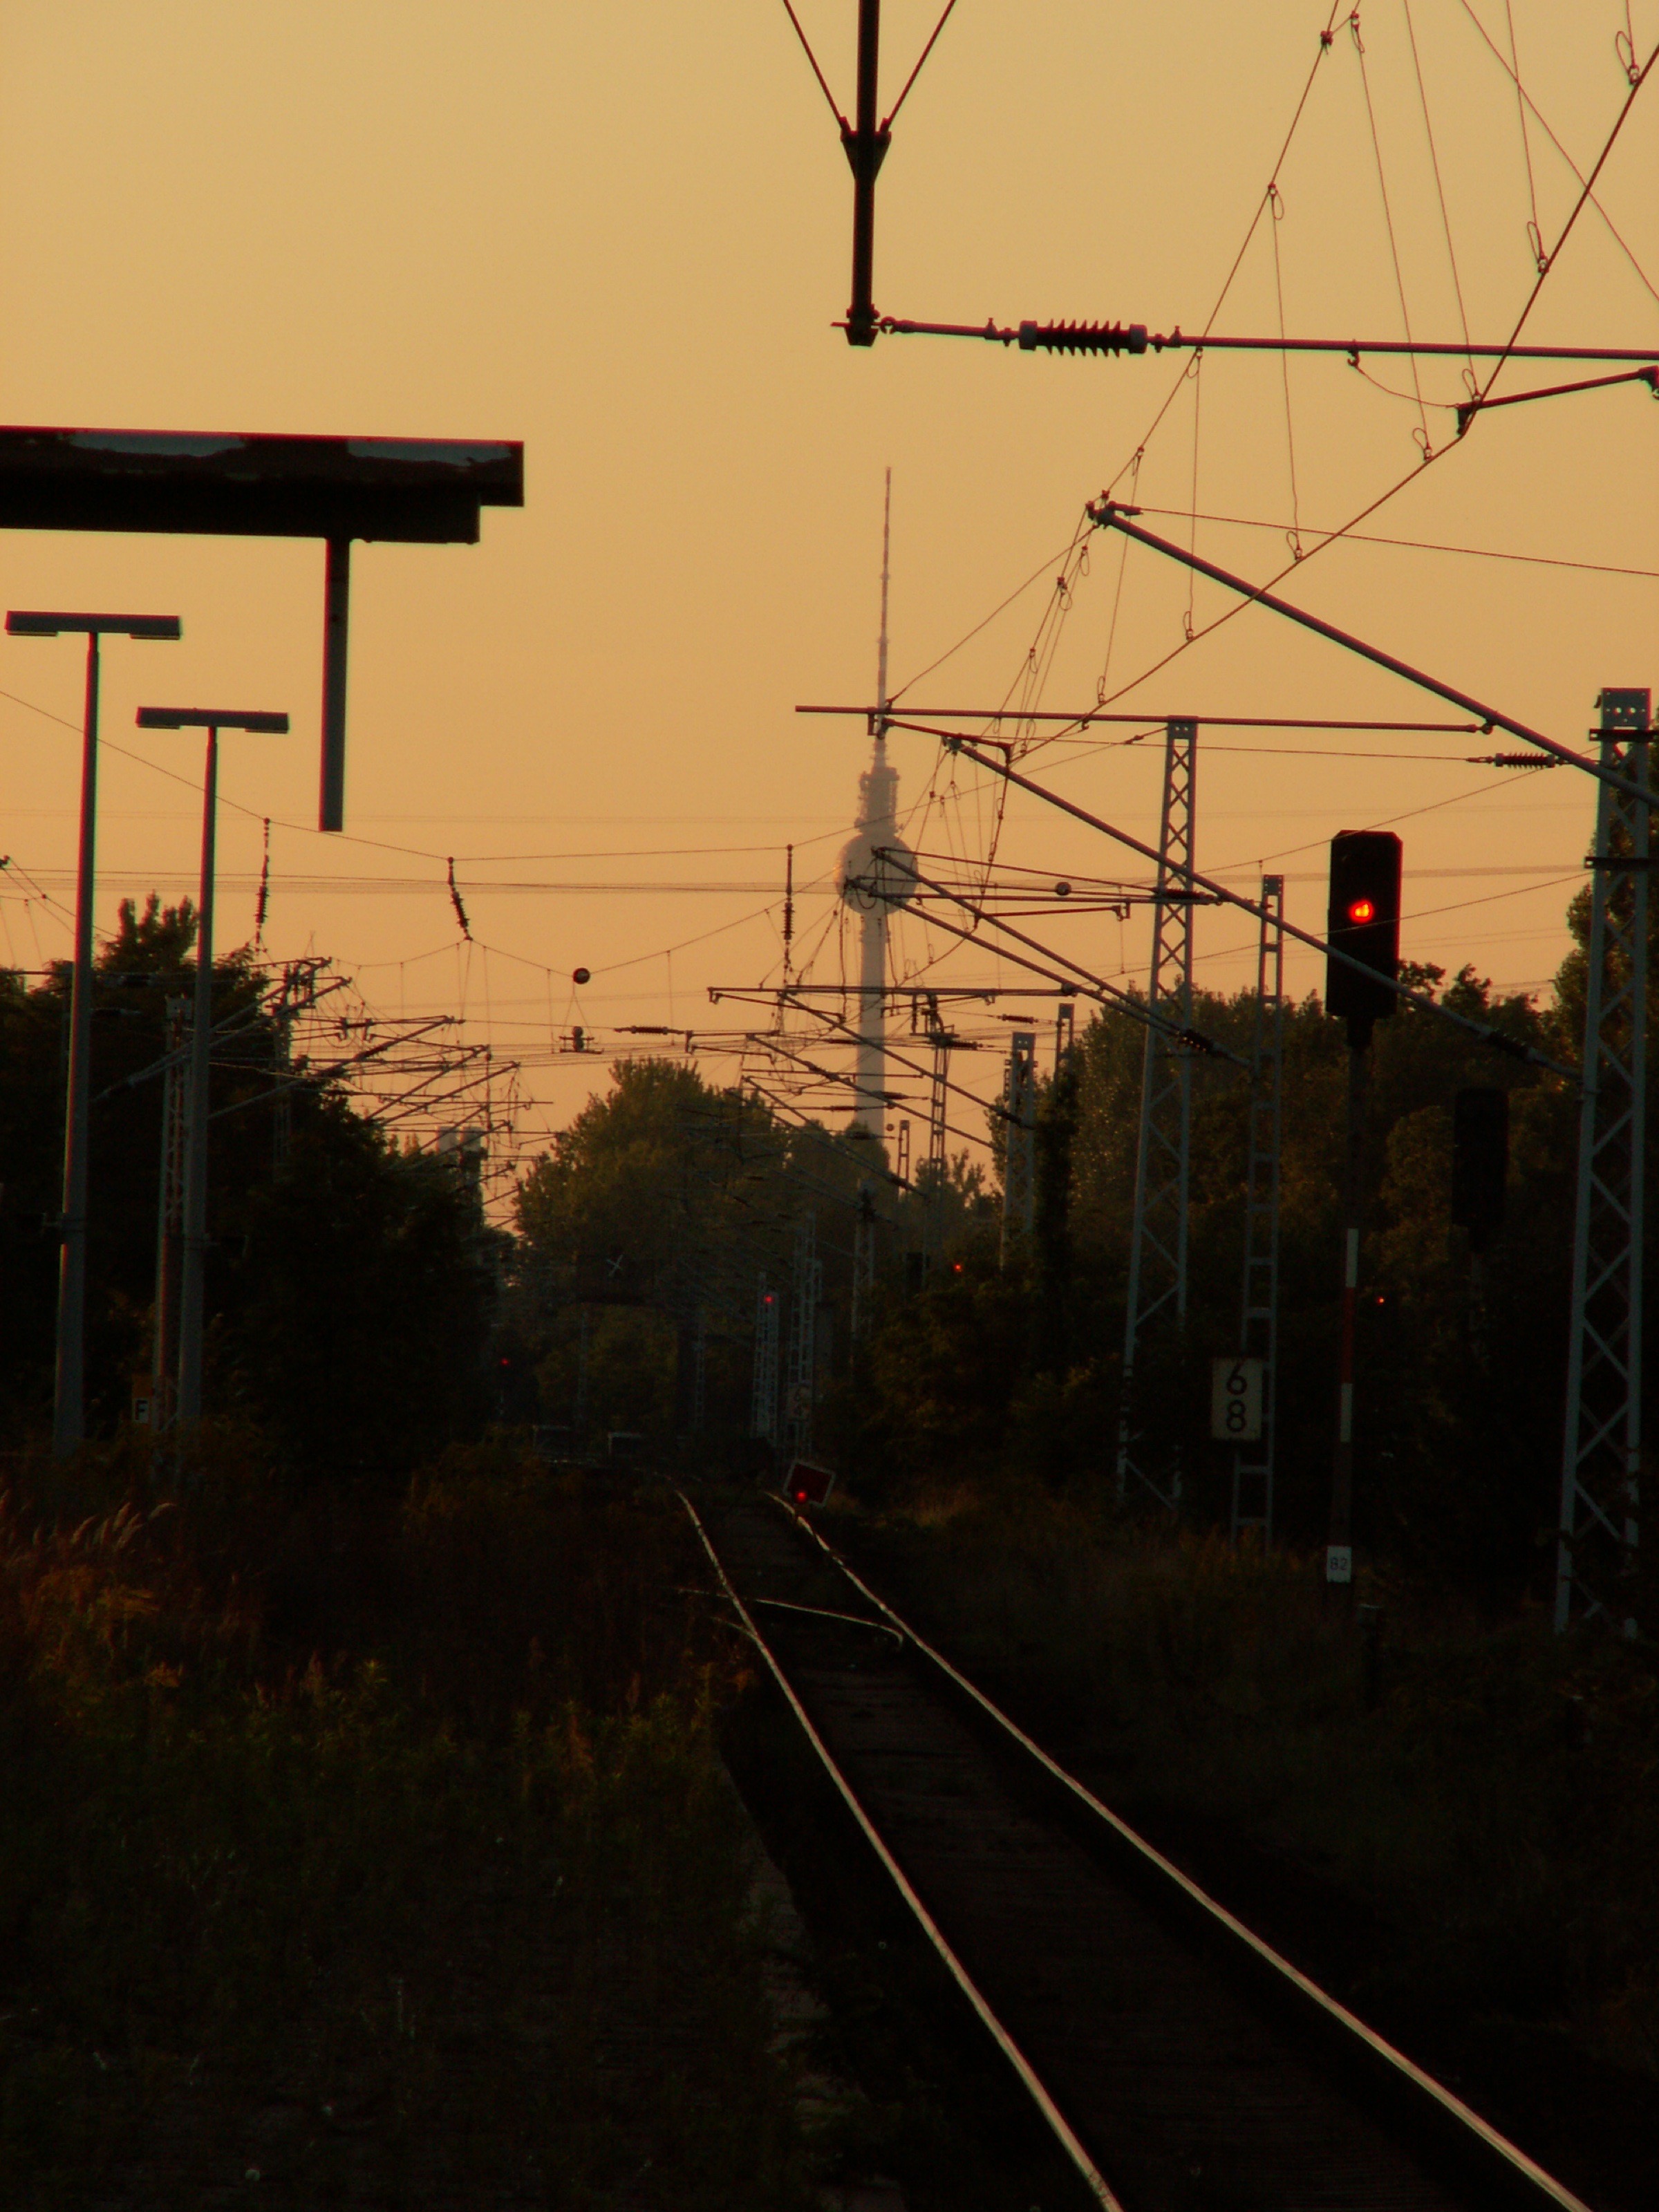 Bahnhof Schöneweide